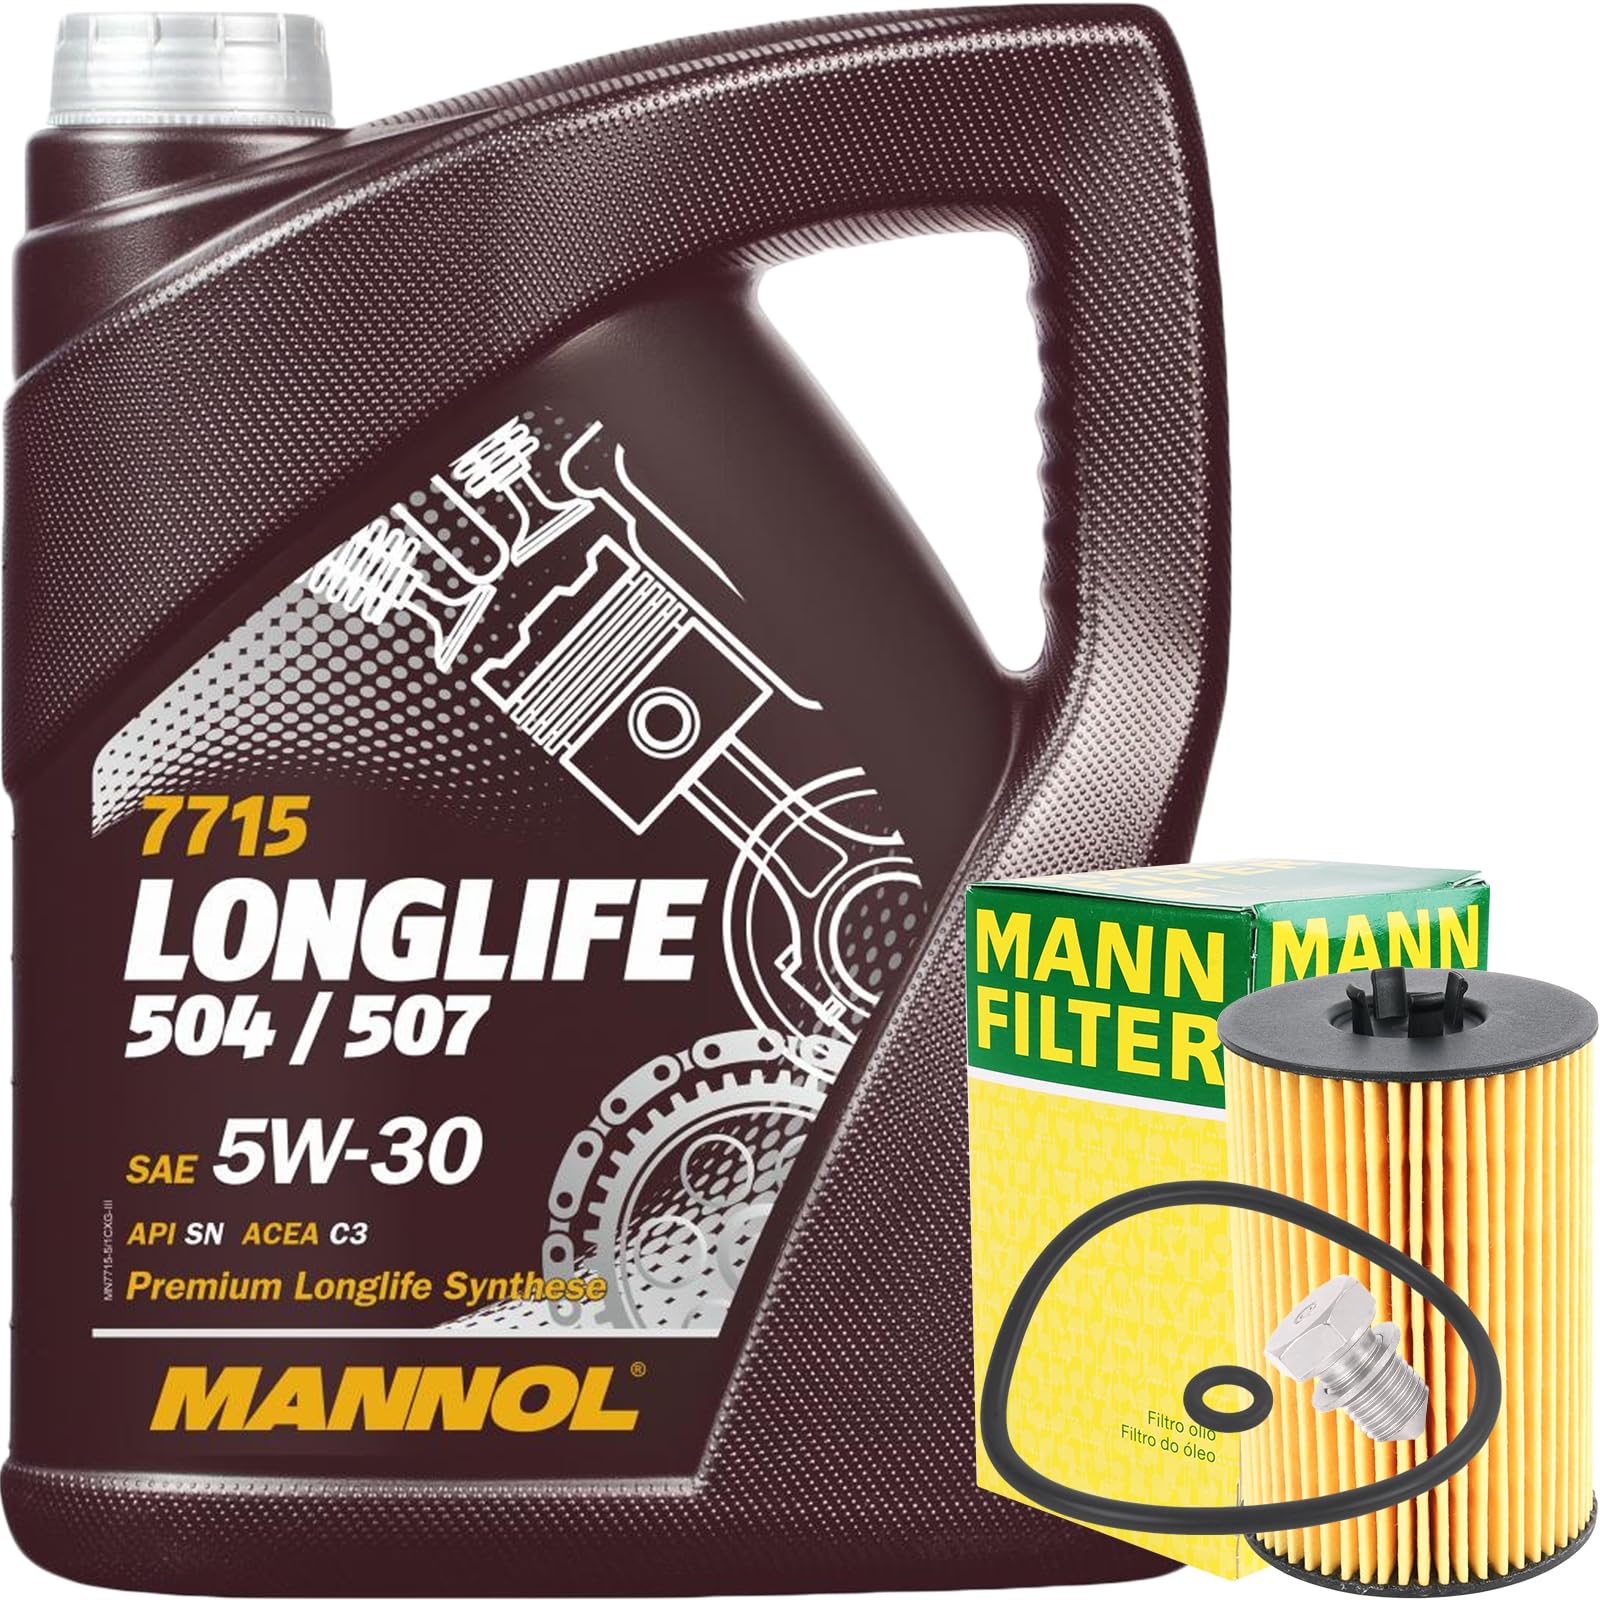 MANN-FILTER Ölfilter + 5 Liter MANNOL Longlife 5W-30 Motoröl passend für VW 504 507.00 5W30 von Generic